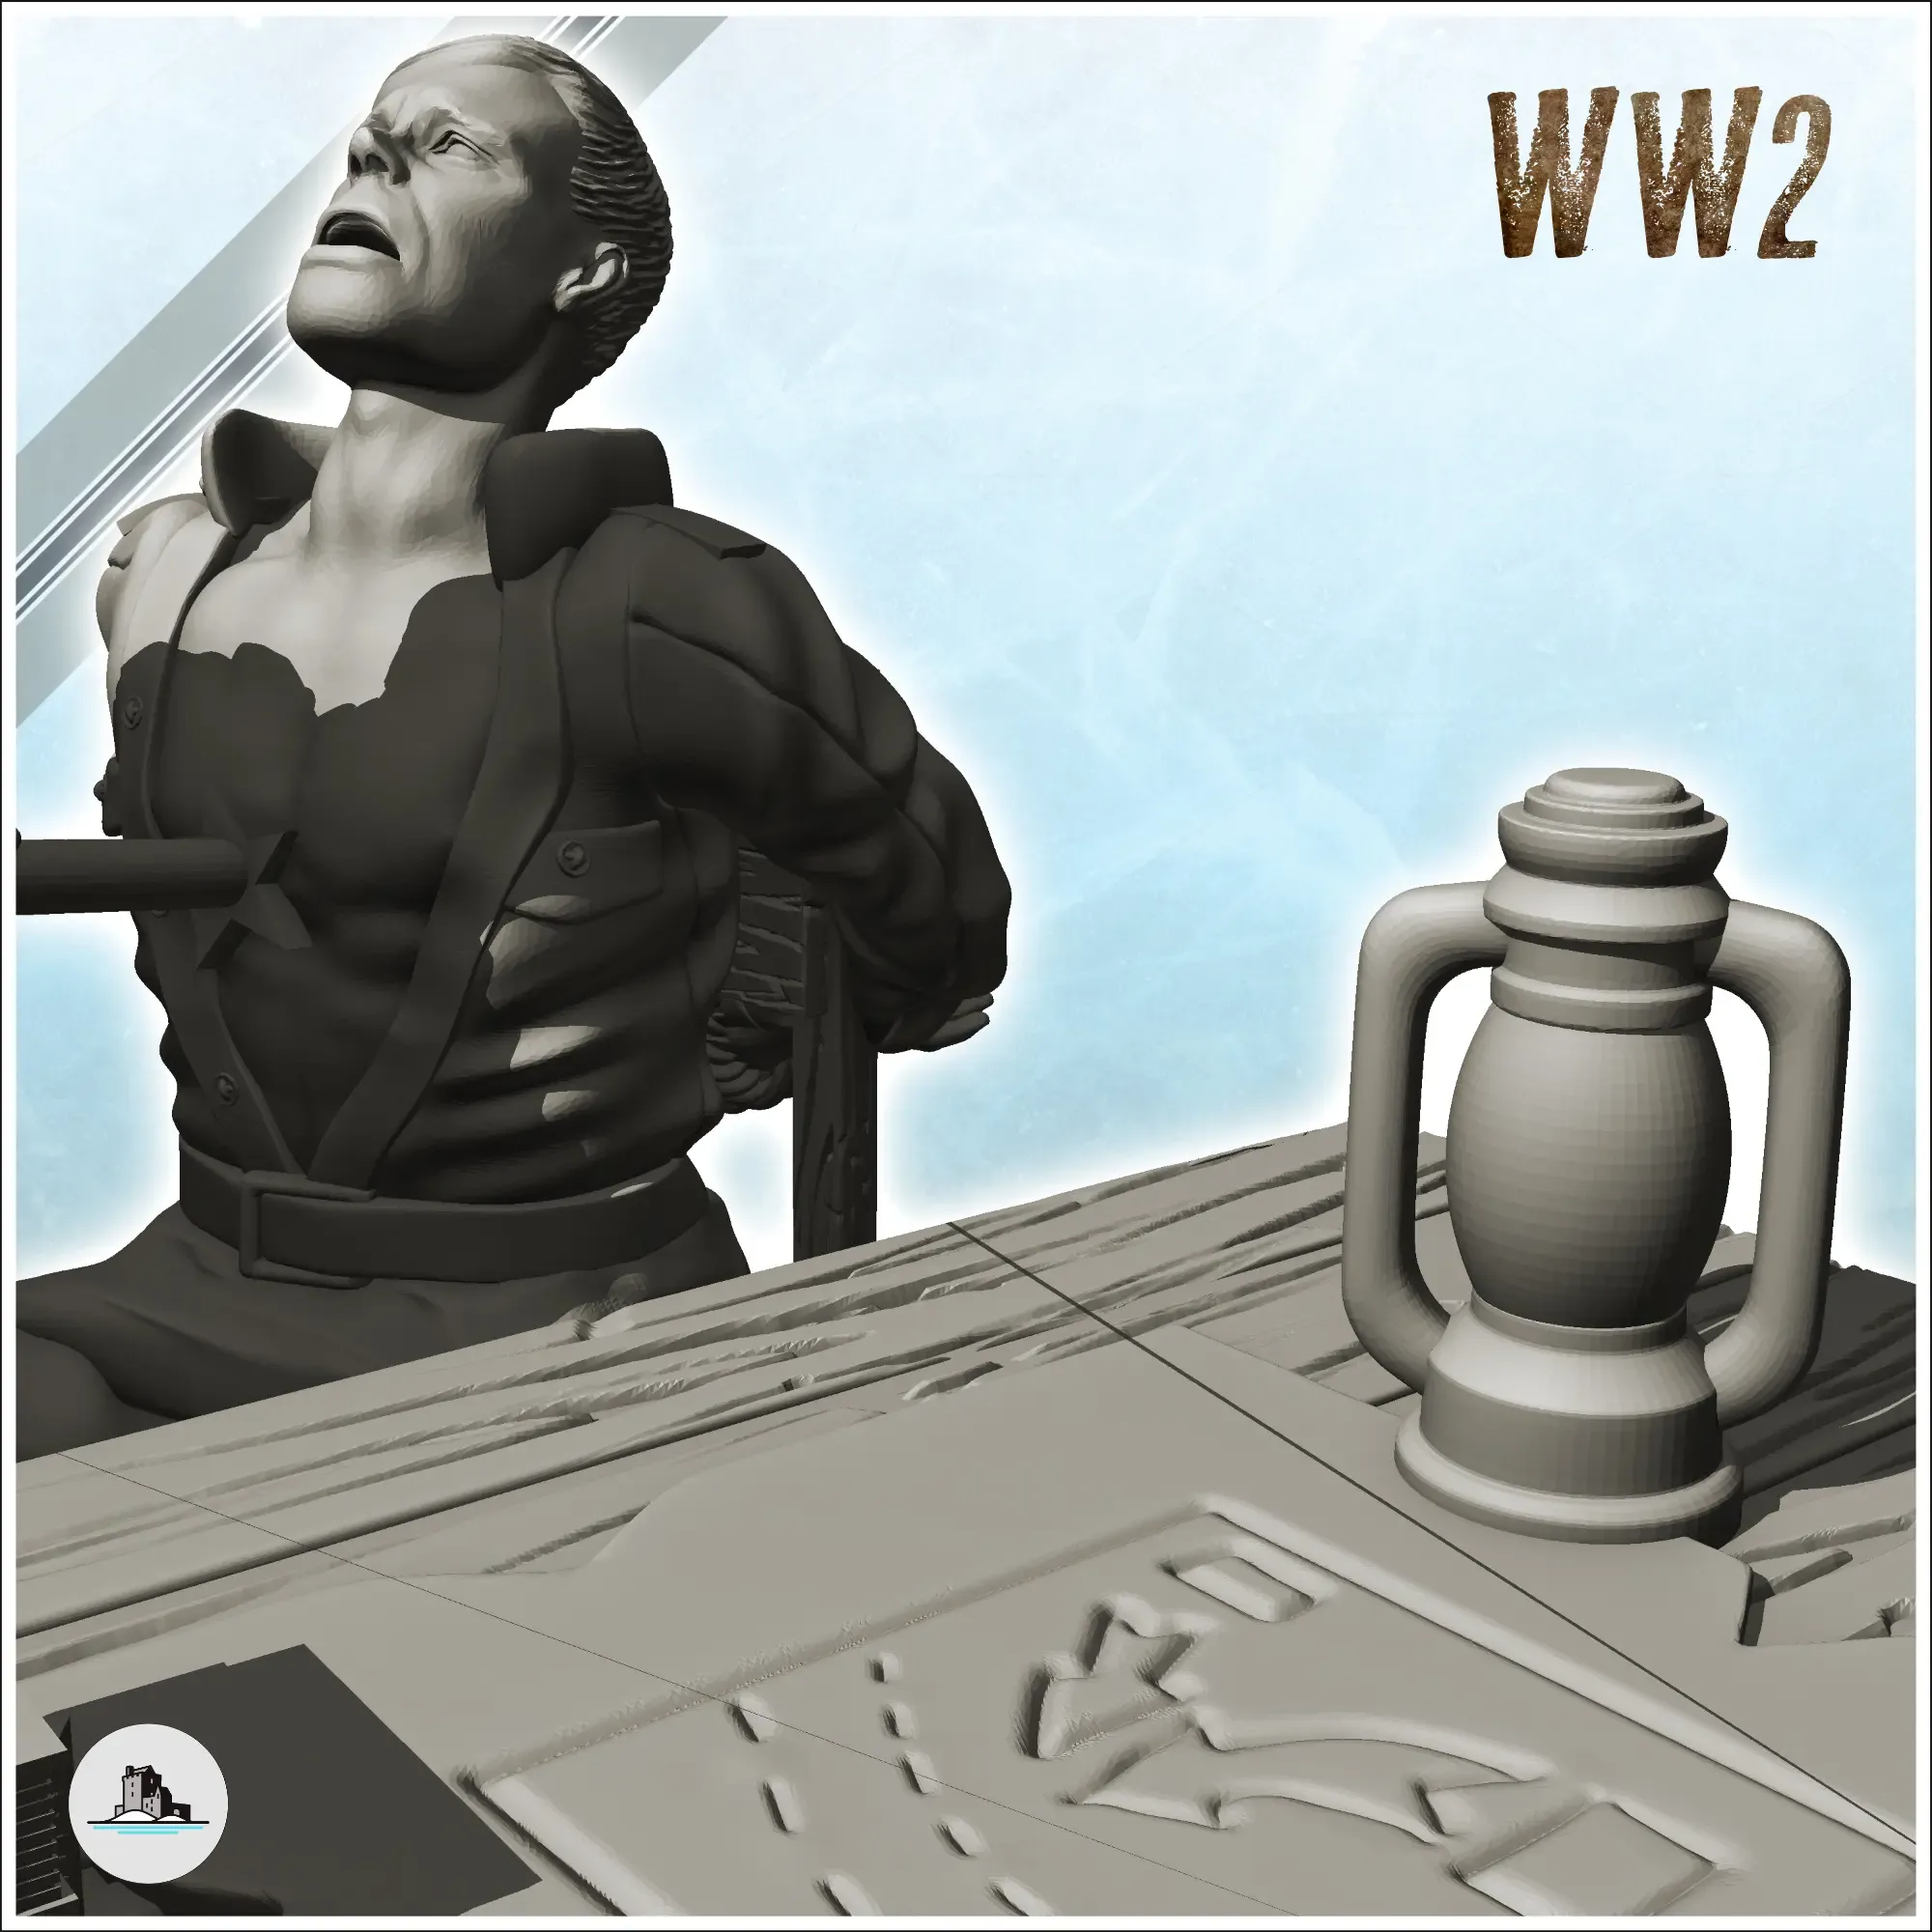 Interrogation scene with German soldier (7) - WW2